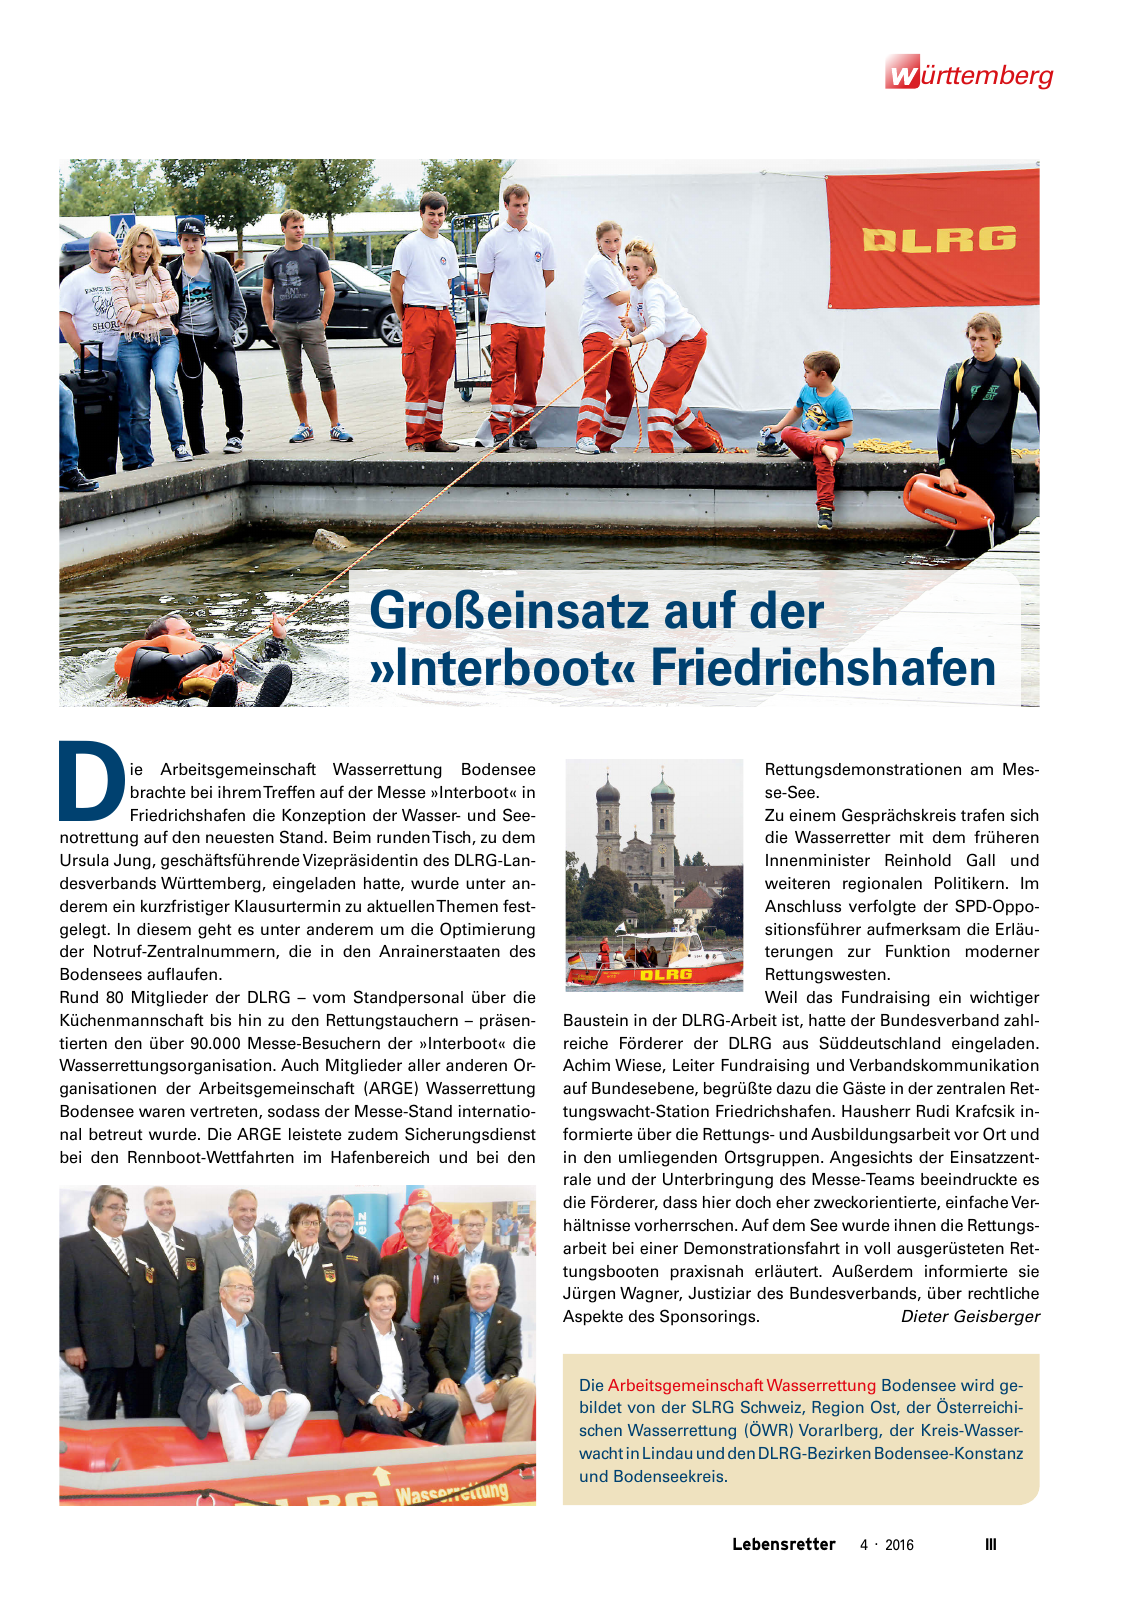 Vorschau Lebensretter 4/2016 - Regionalausgabe Württemberg Seite 5